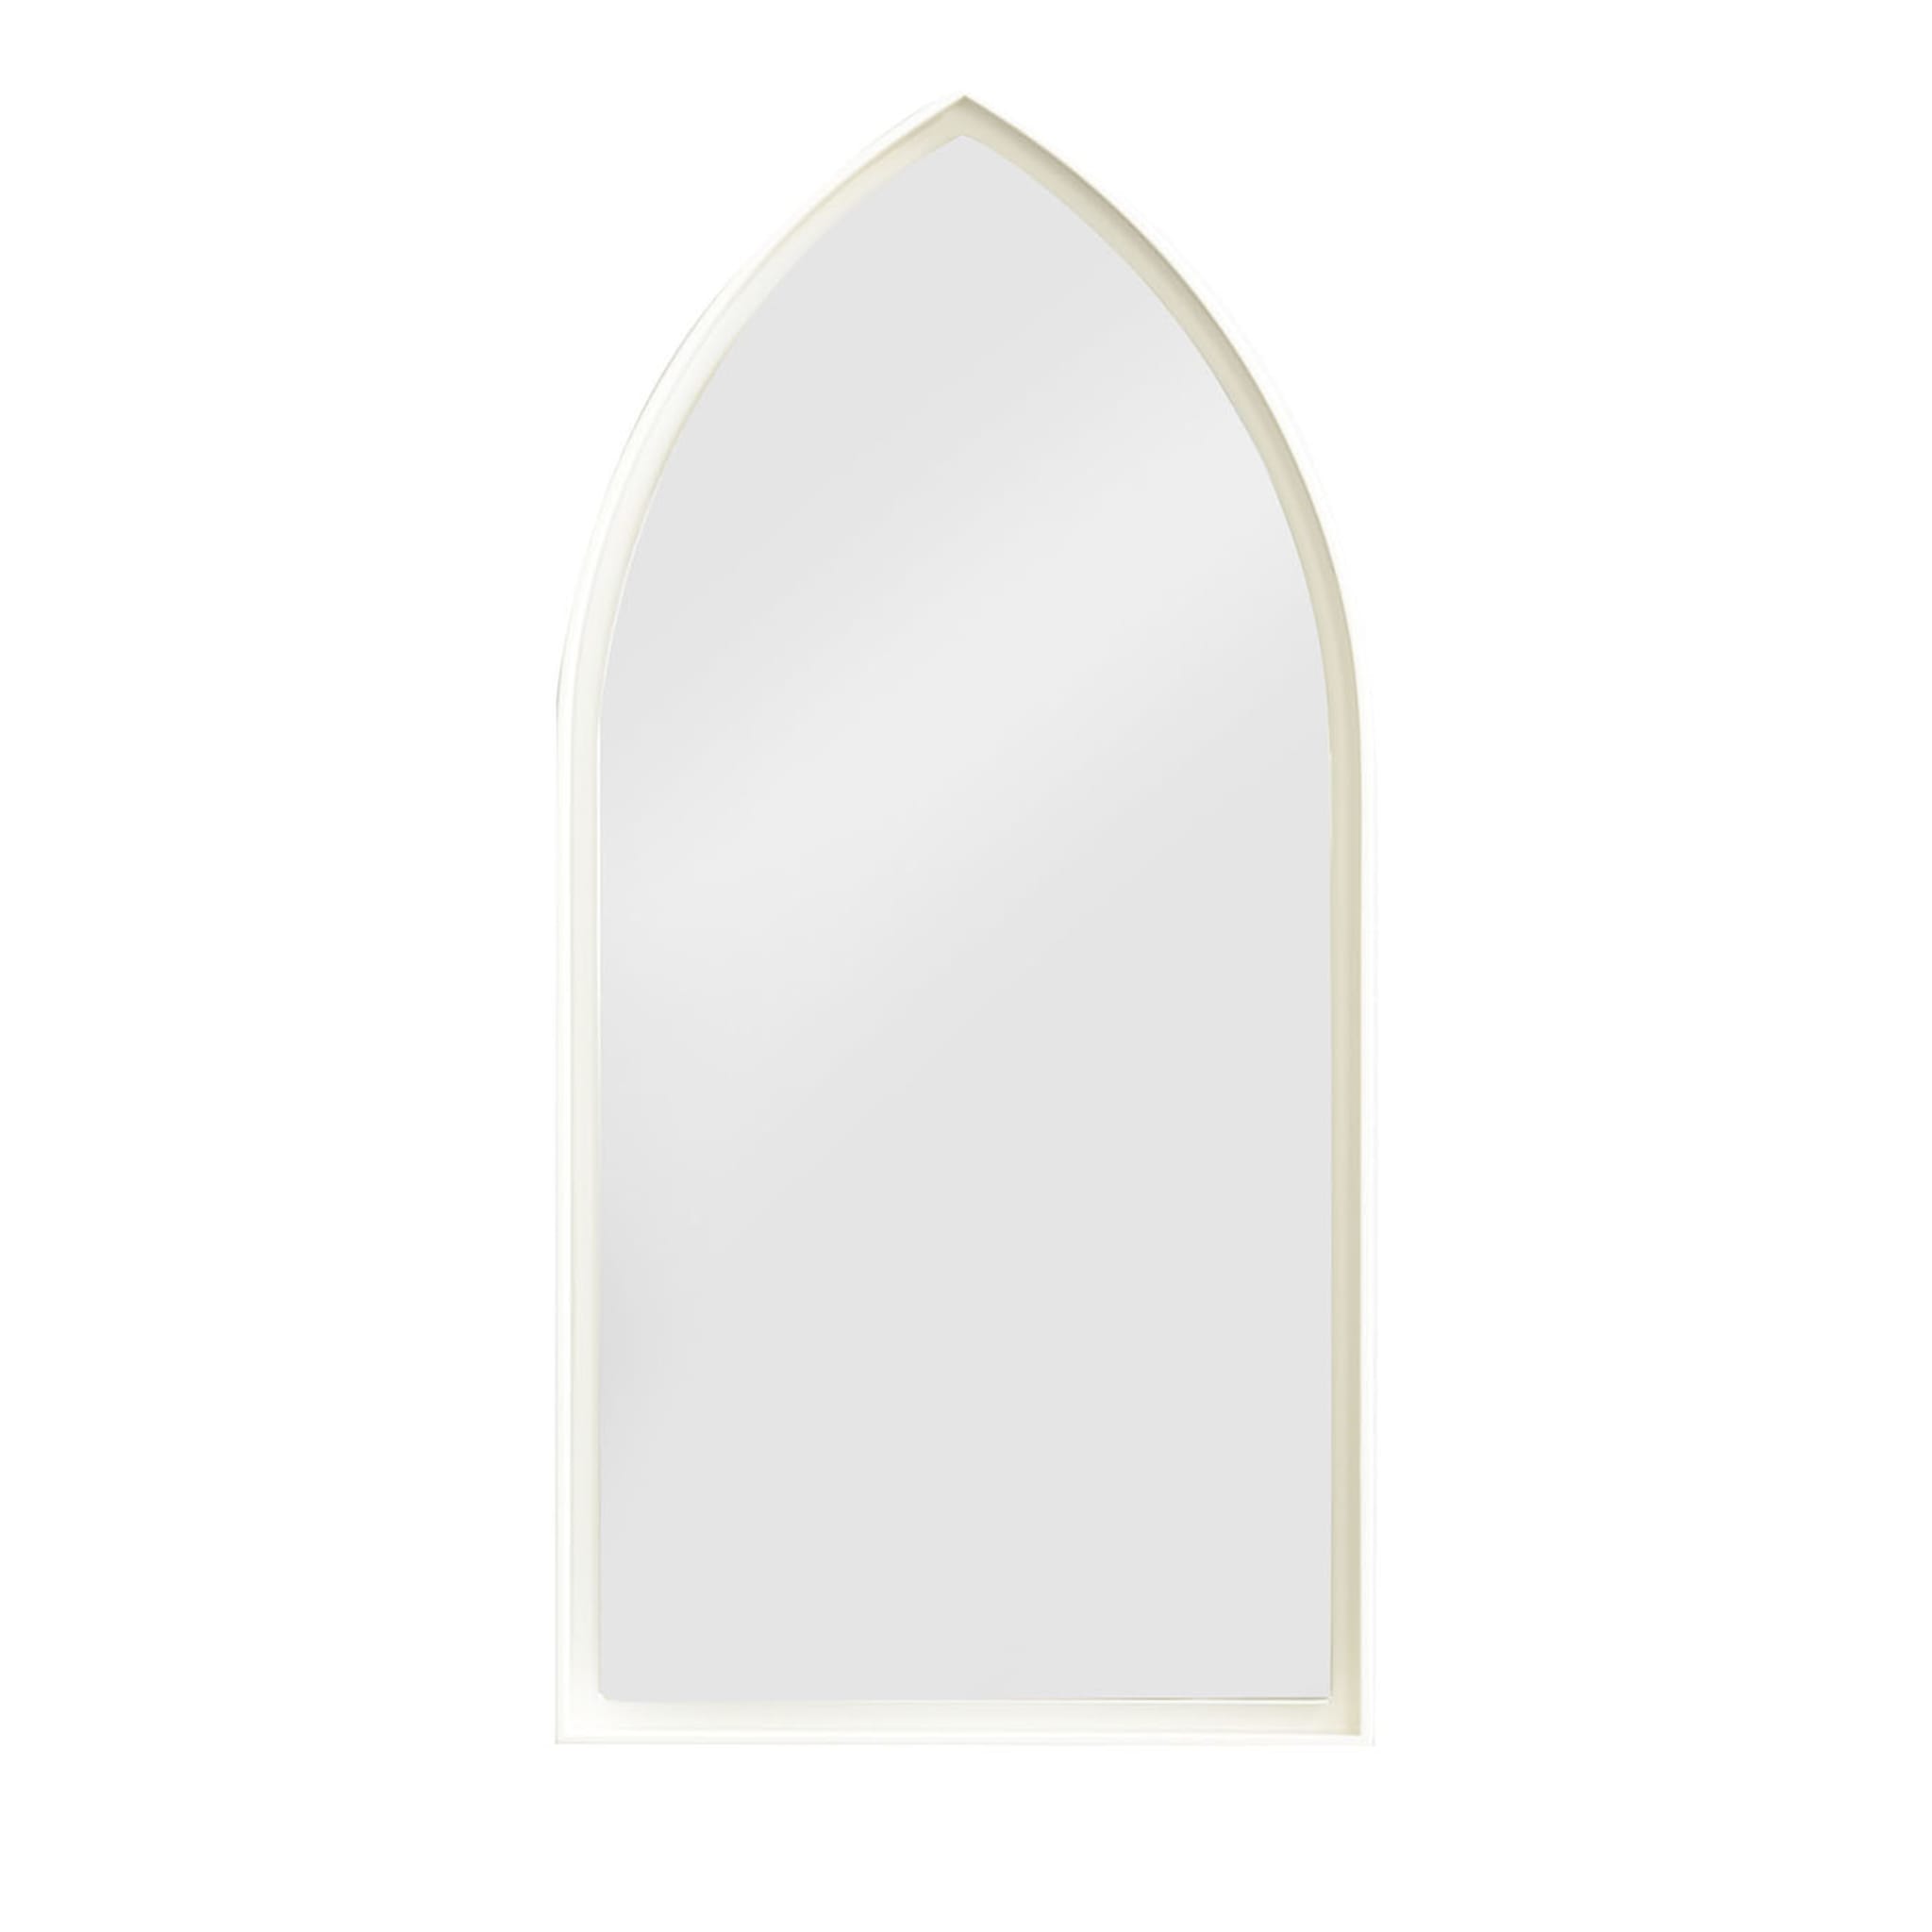 Panoramaspiegel Gothic Weiß von Zaven  - Hauptansicht